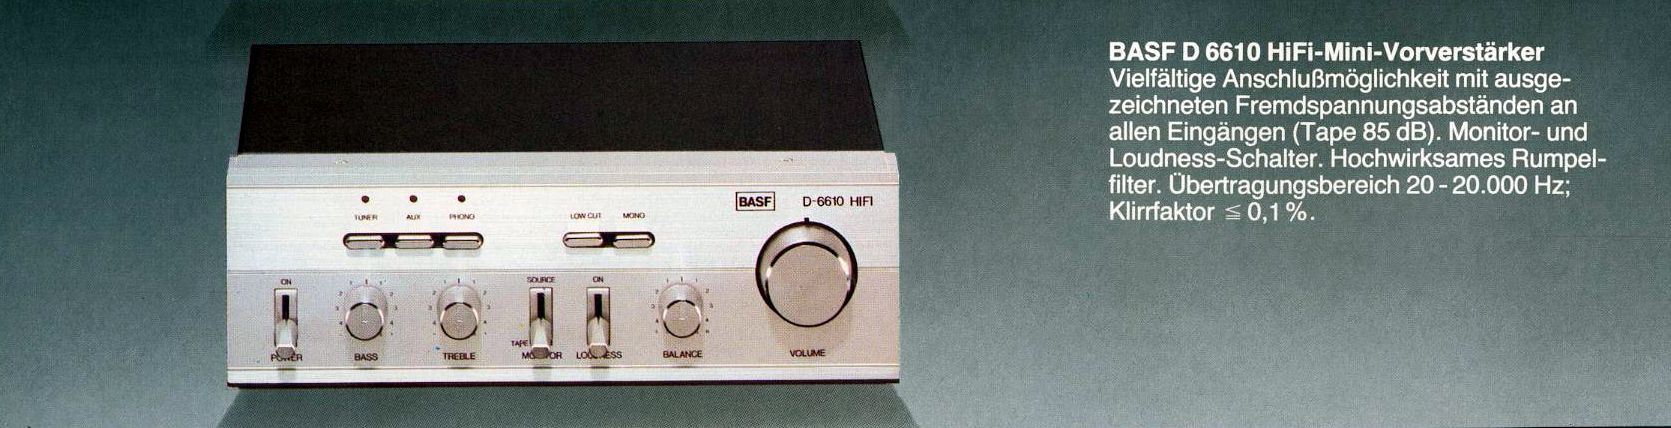 BASF D-6610-Prospekt-1.jpg